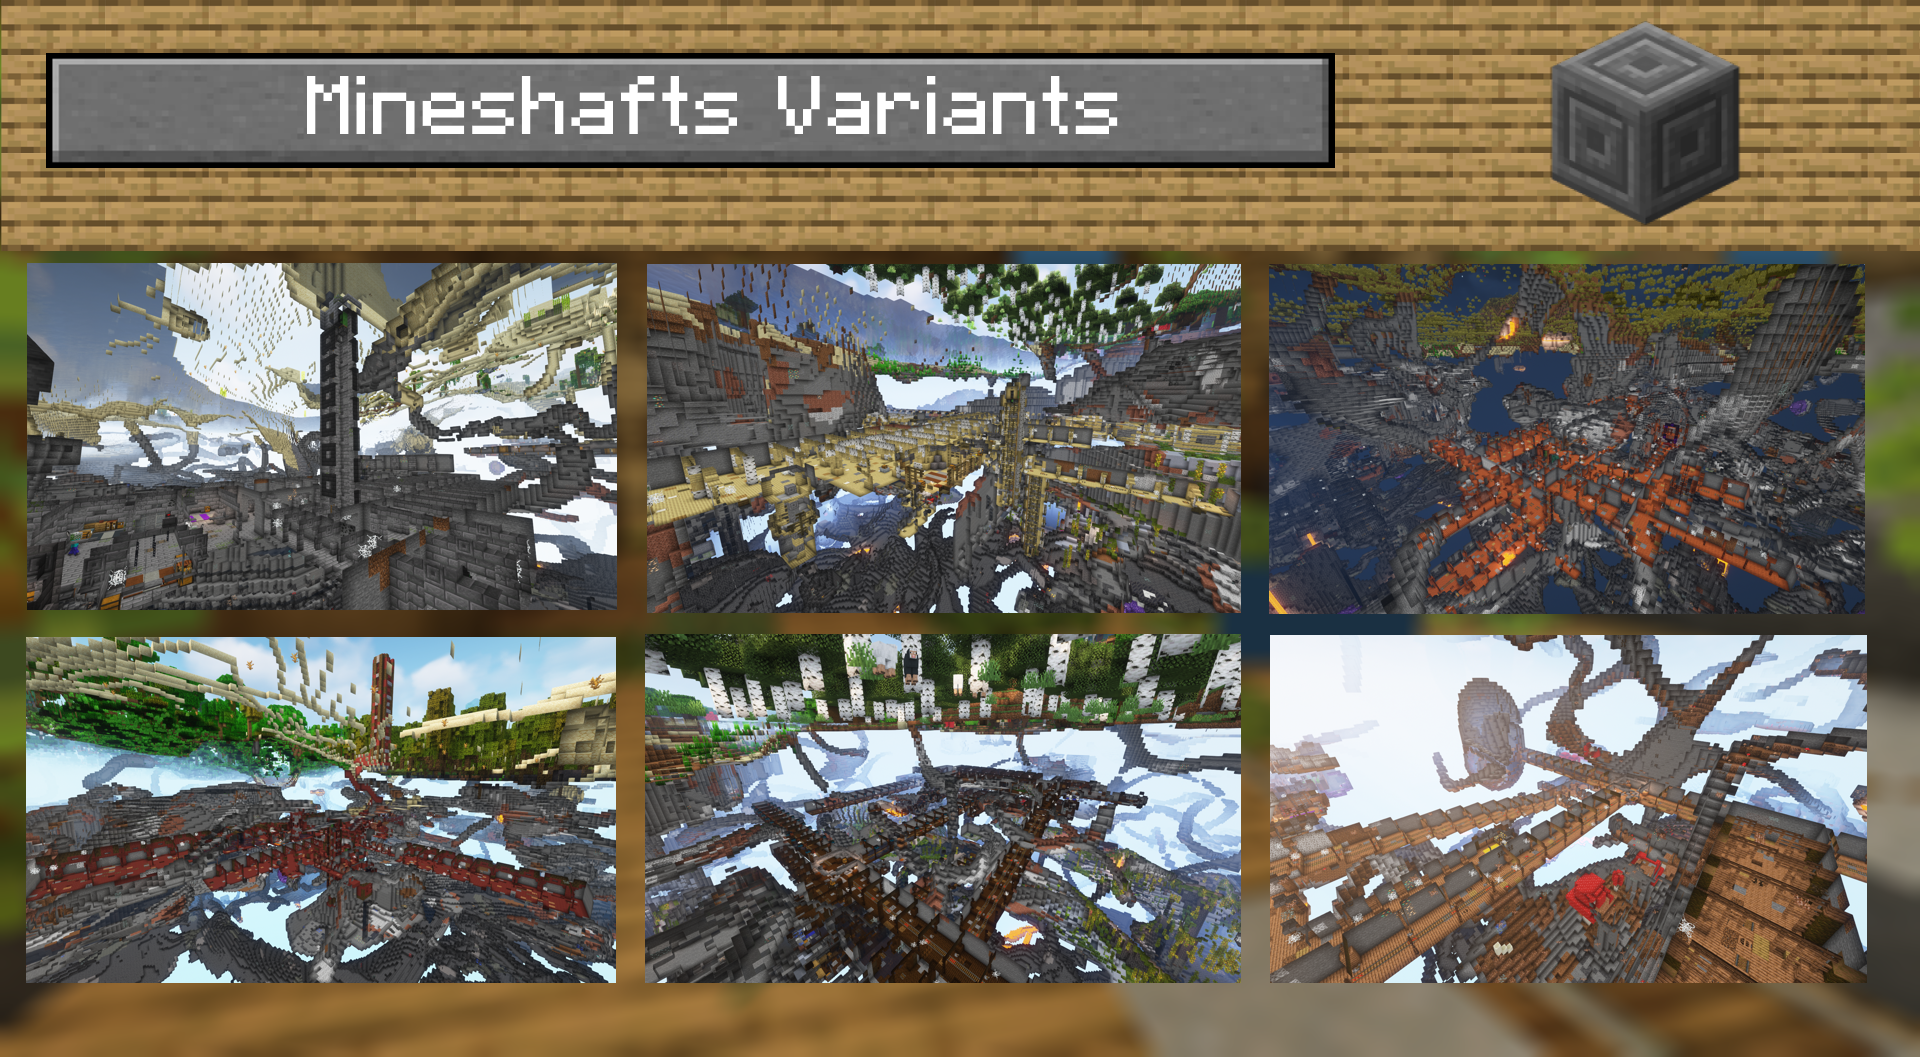 Mineshafts variants